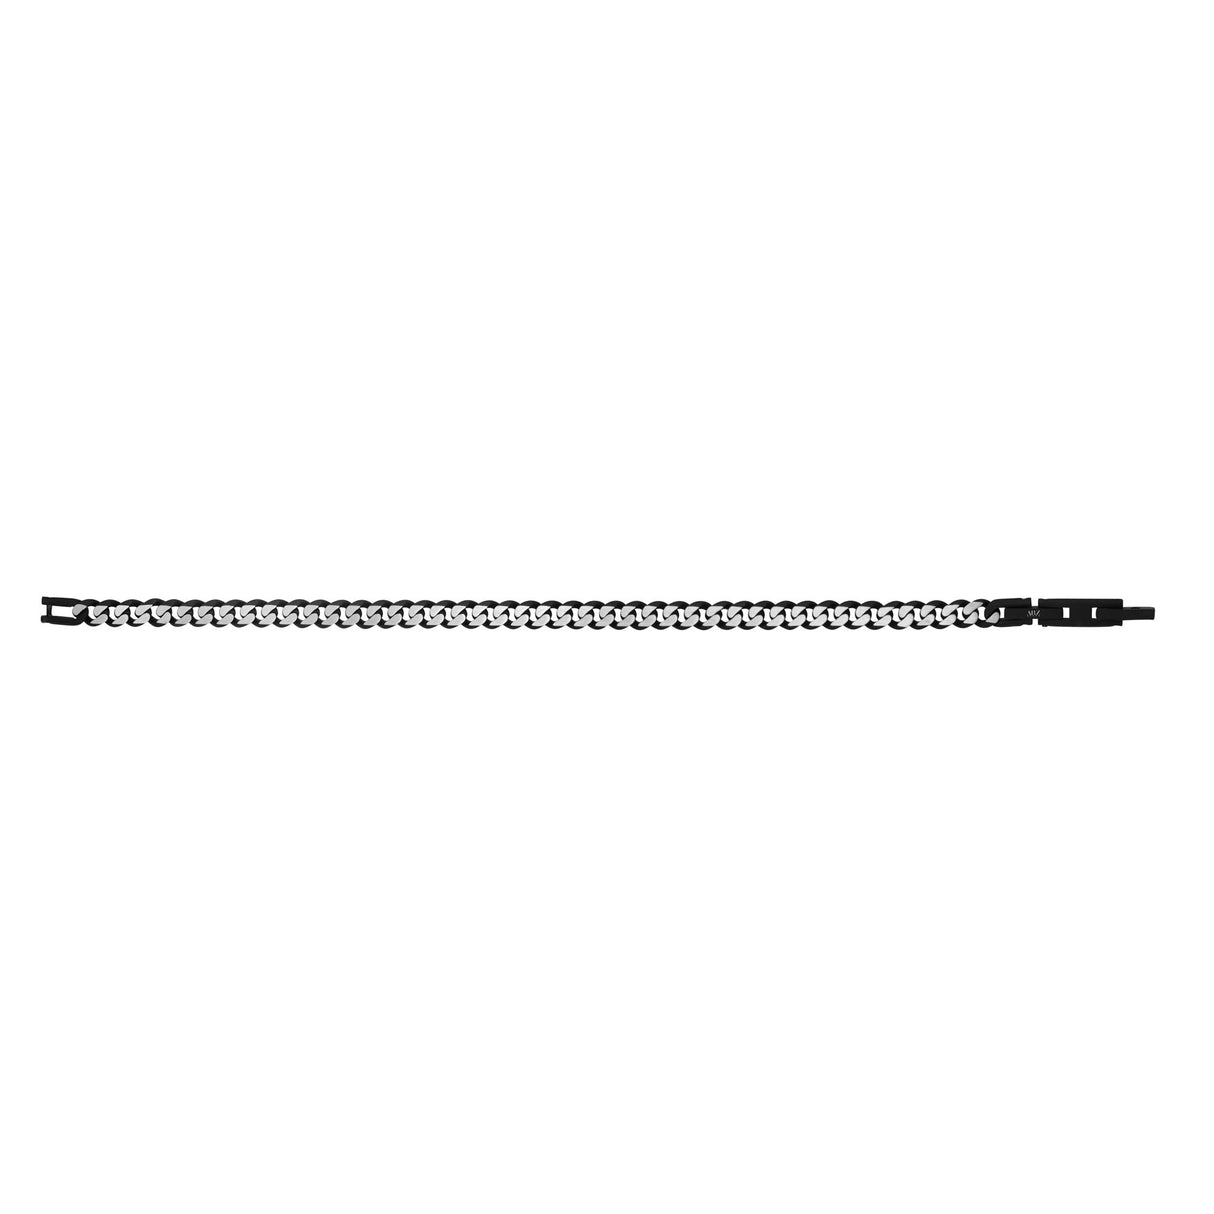 Mens Steel Bracelets - 5mm Black Two Tone Steel Thin Cuban Link Bracelet